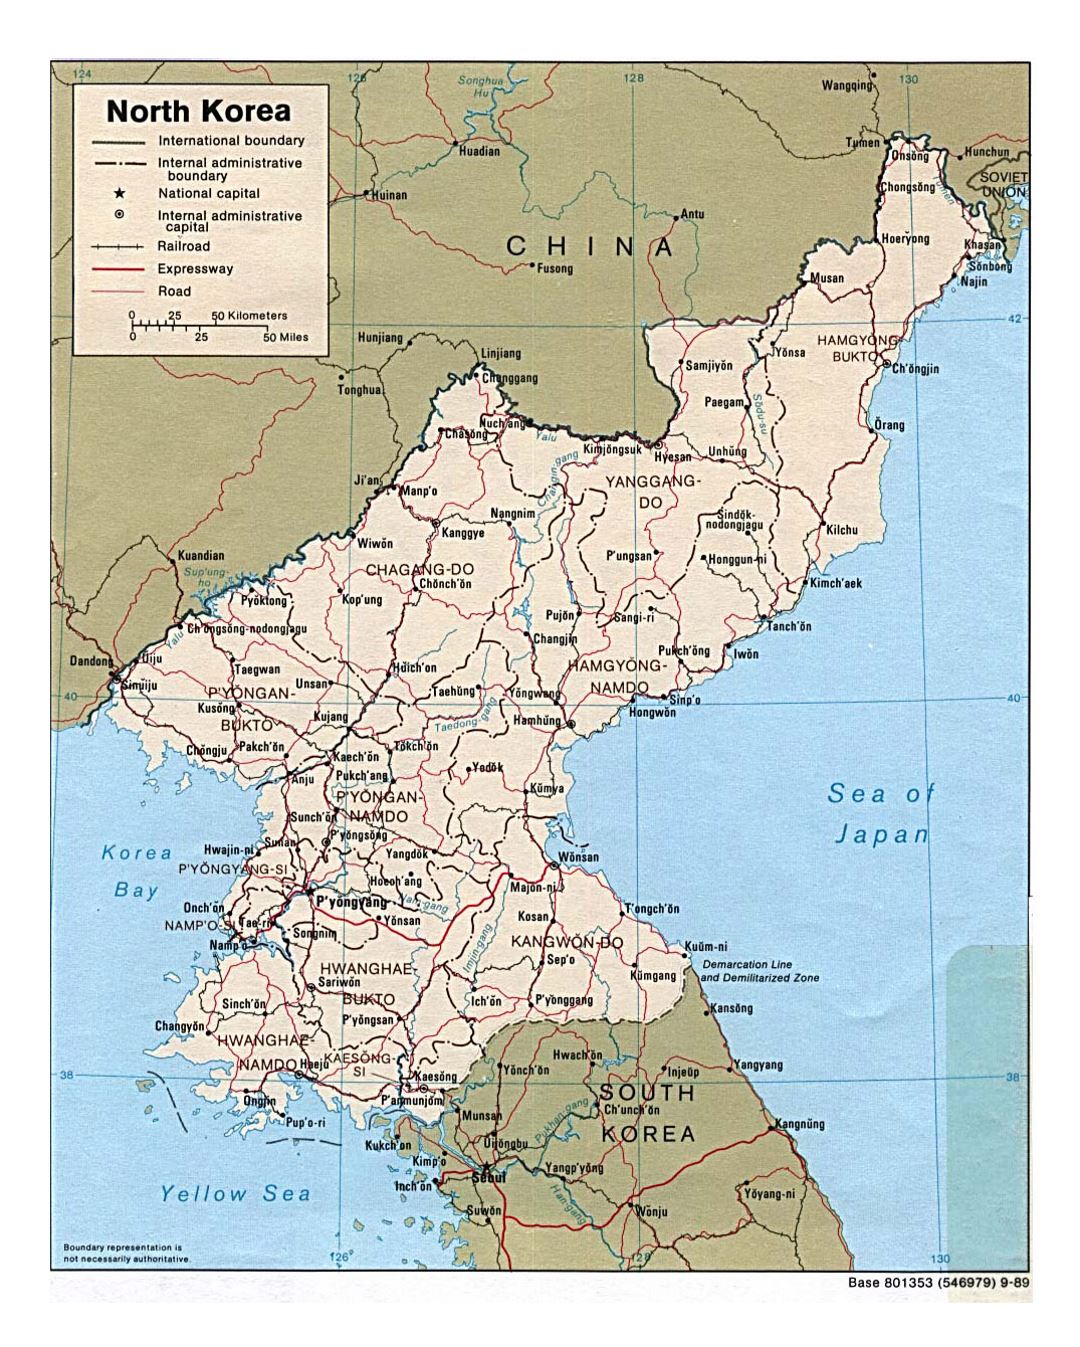 Detallado mapa político y administrativo de Corea del Norte con carreteras, ferrocarriles y principales ciudades - 1989